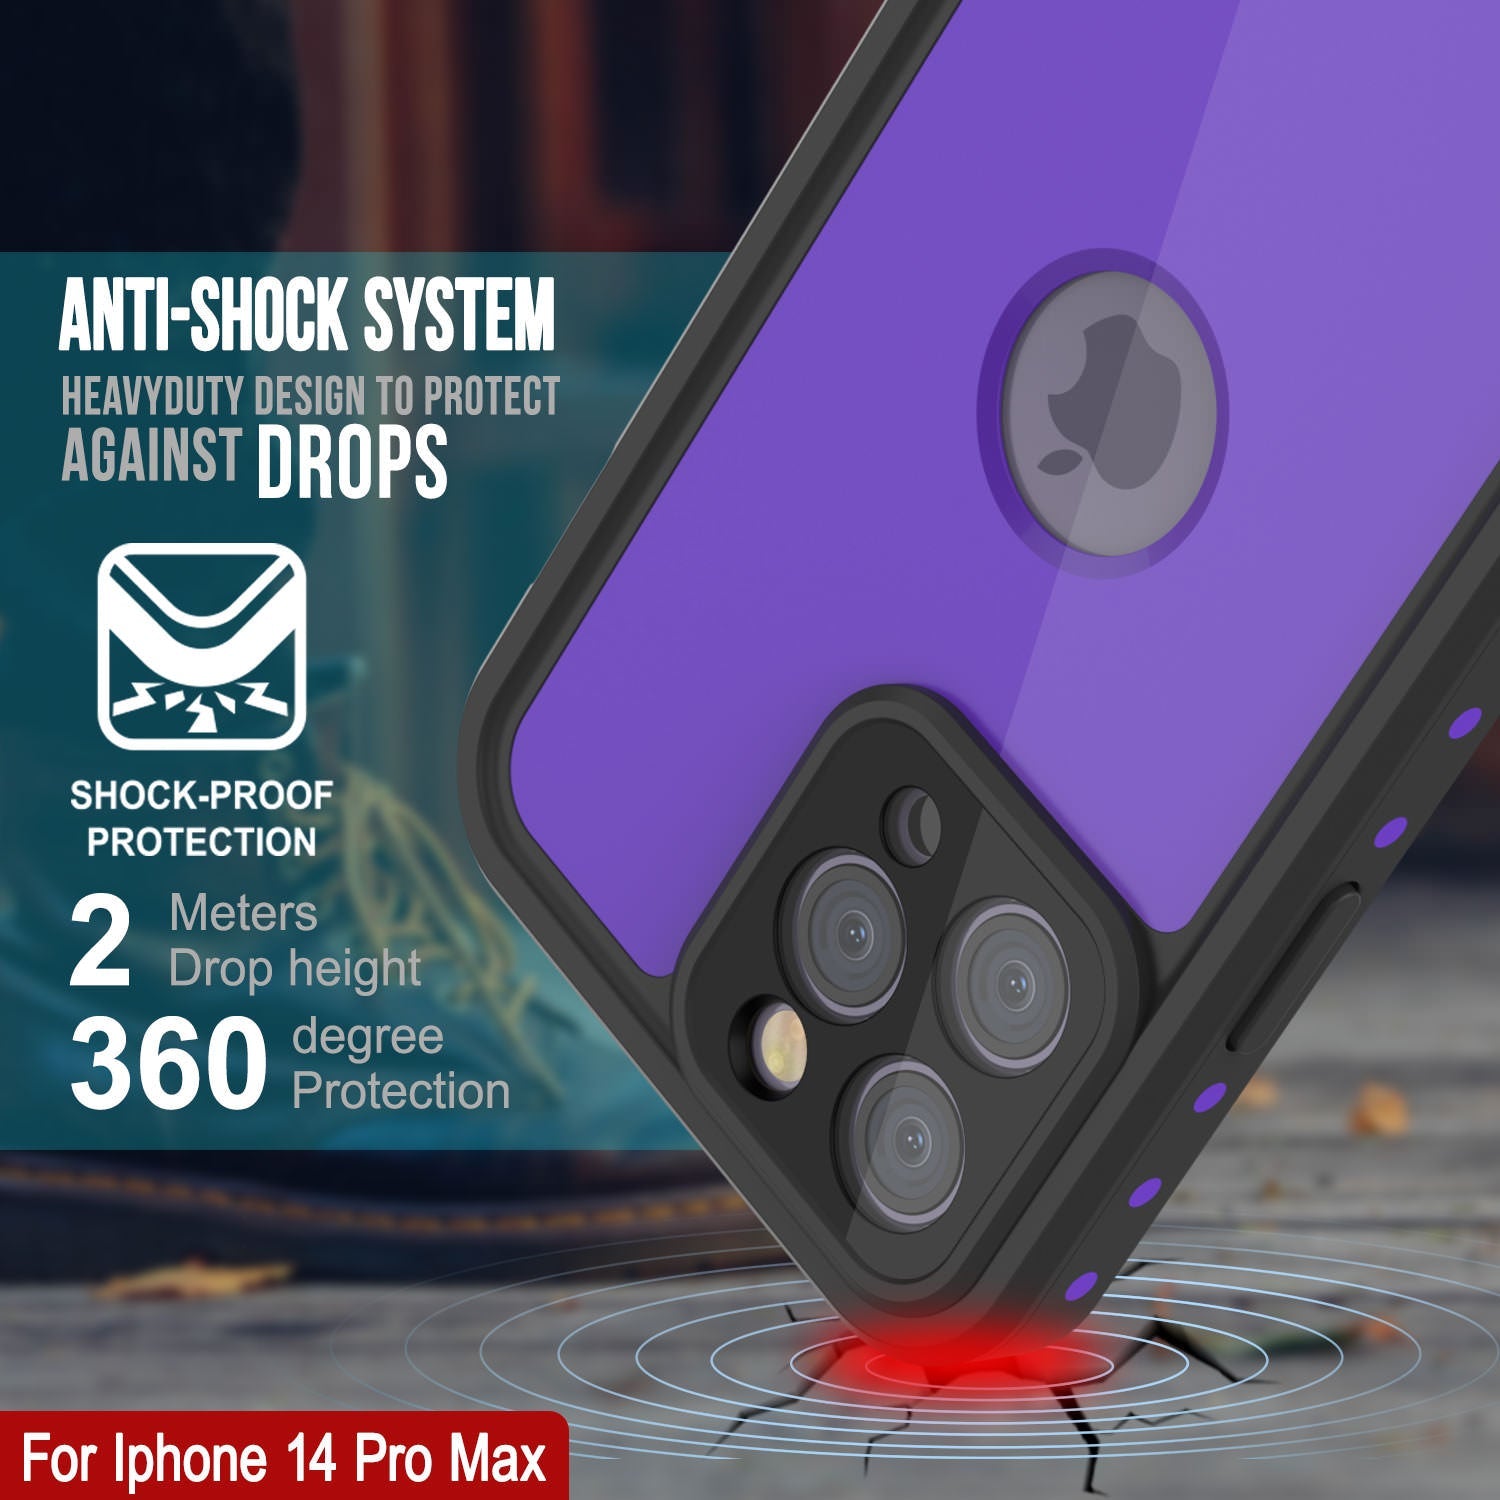 iPhone 14 Pro Max Waterproof IP68 Case, Punkcase [Purple] [StudStar Series] [Slim Fit] [Dirtproof]